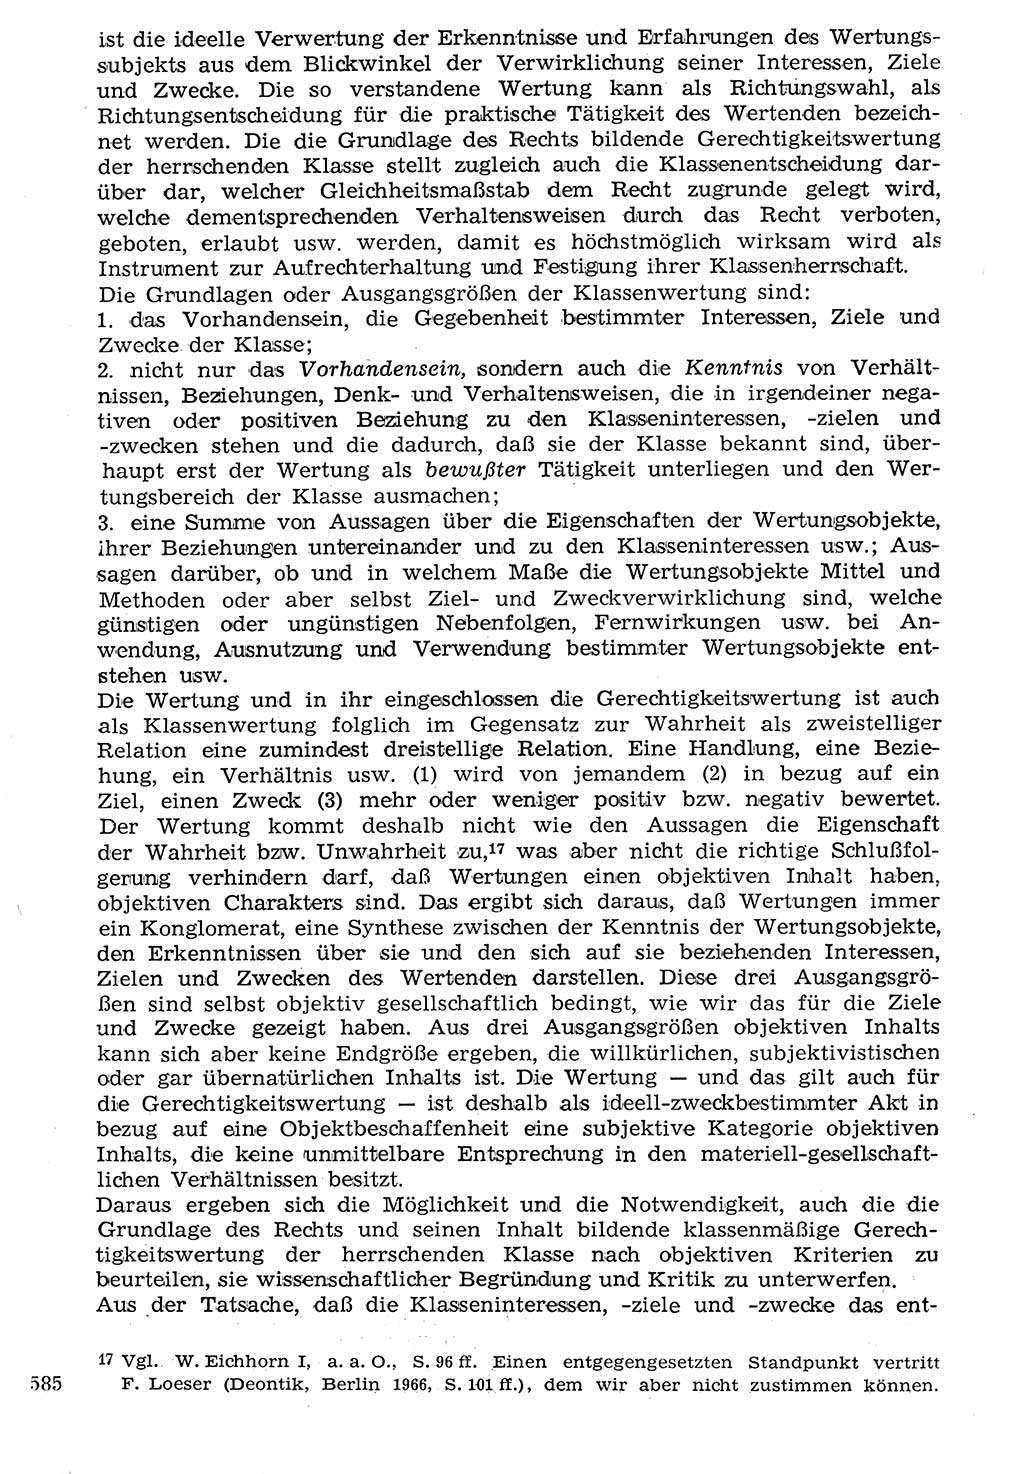 Staat und Recht (StuR), 17. Jahrgang [Deutsche Demokratische Republik (DDR)] 1968, Seite 585 (StuR DDR 1968, S. 585)